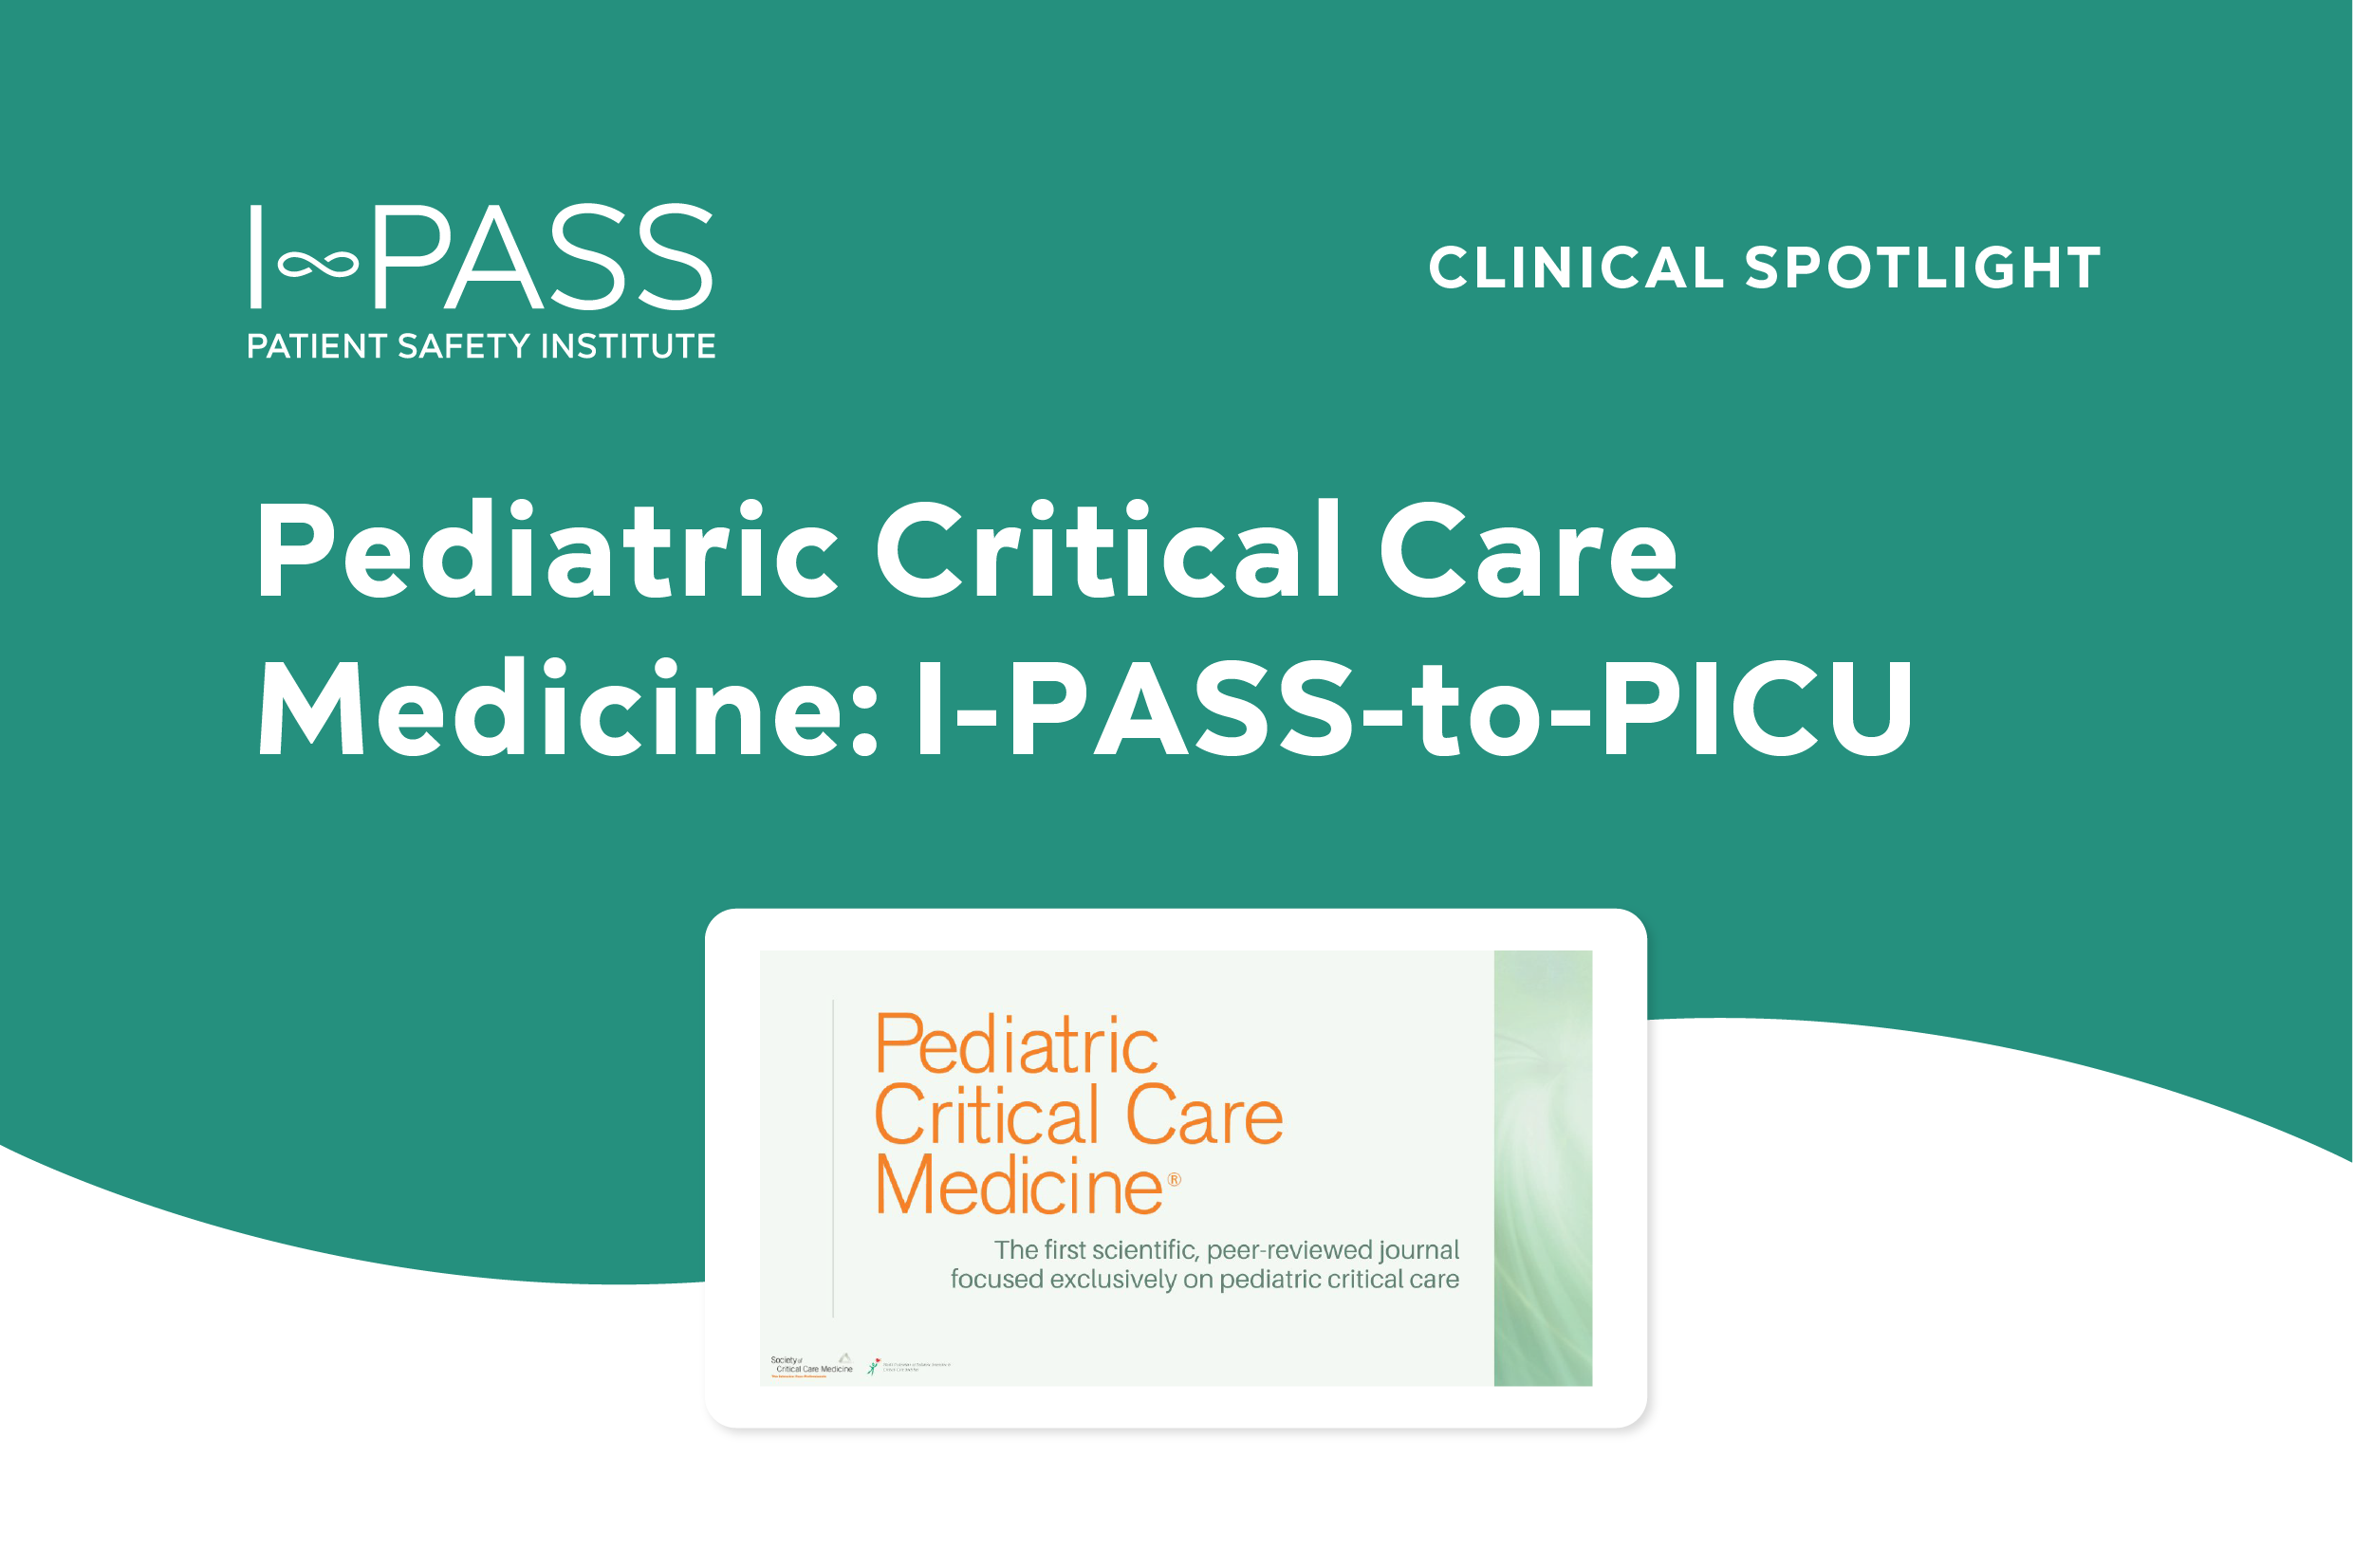 Pediatric Critical Care Medicine: Interfacility Referral Communication for PICU Transfer